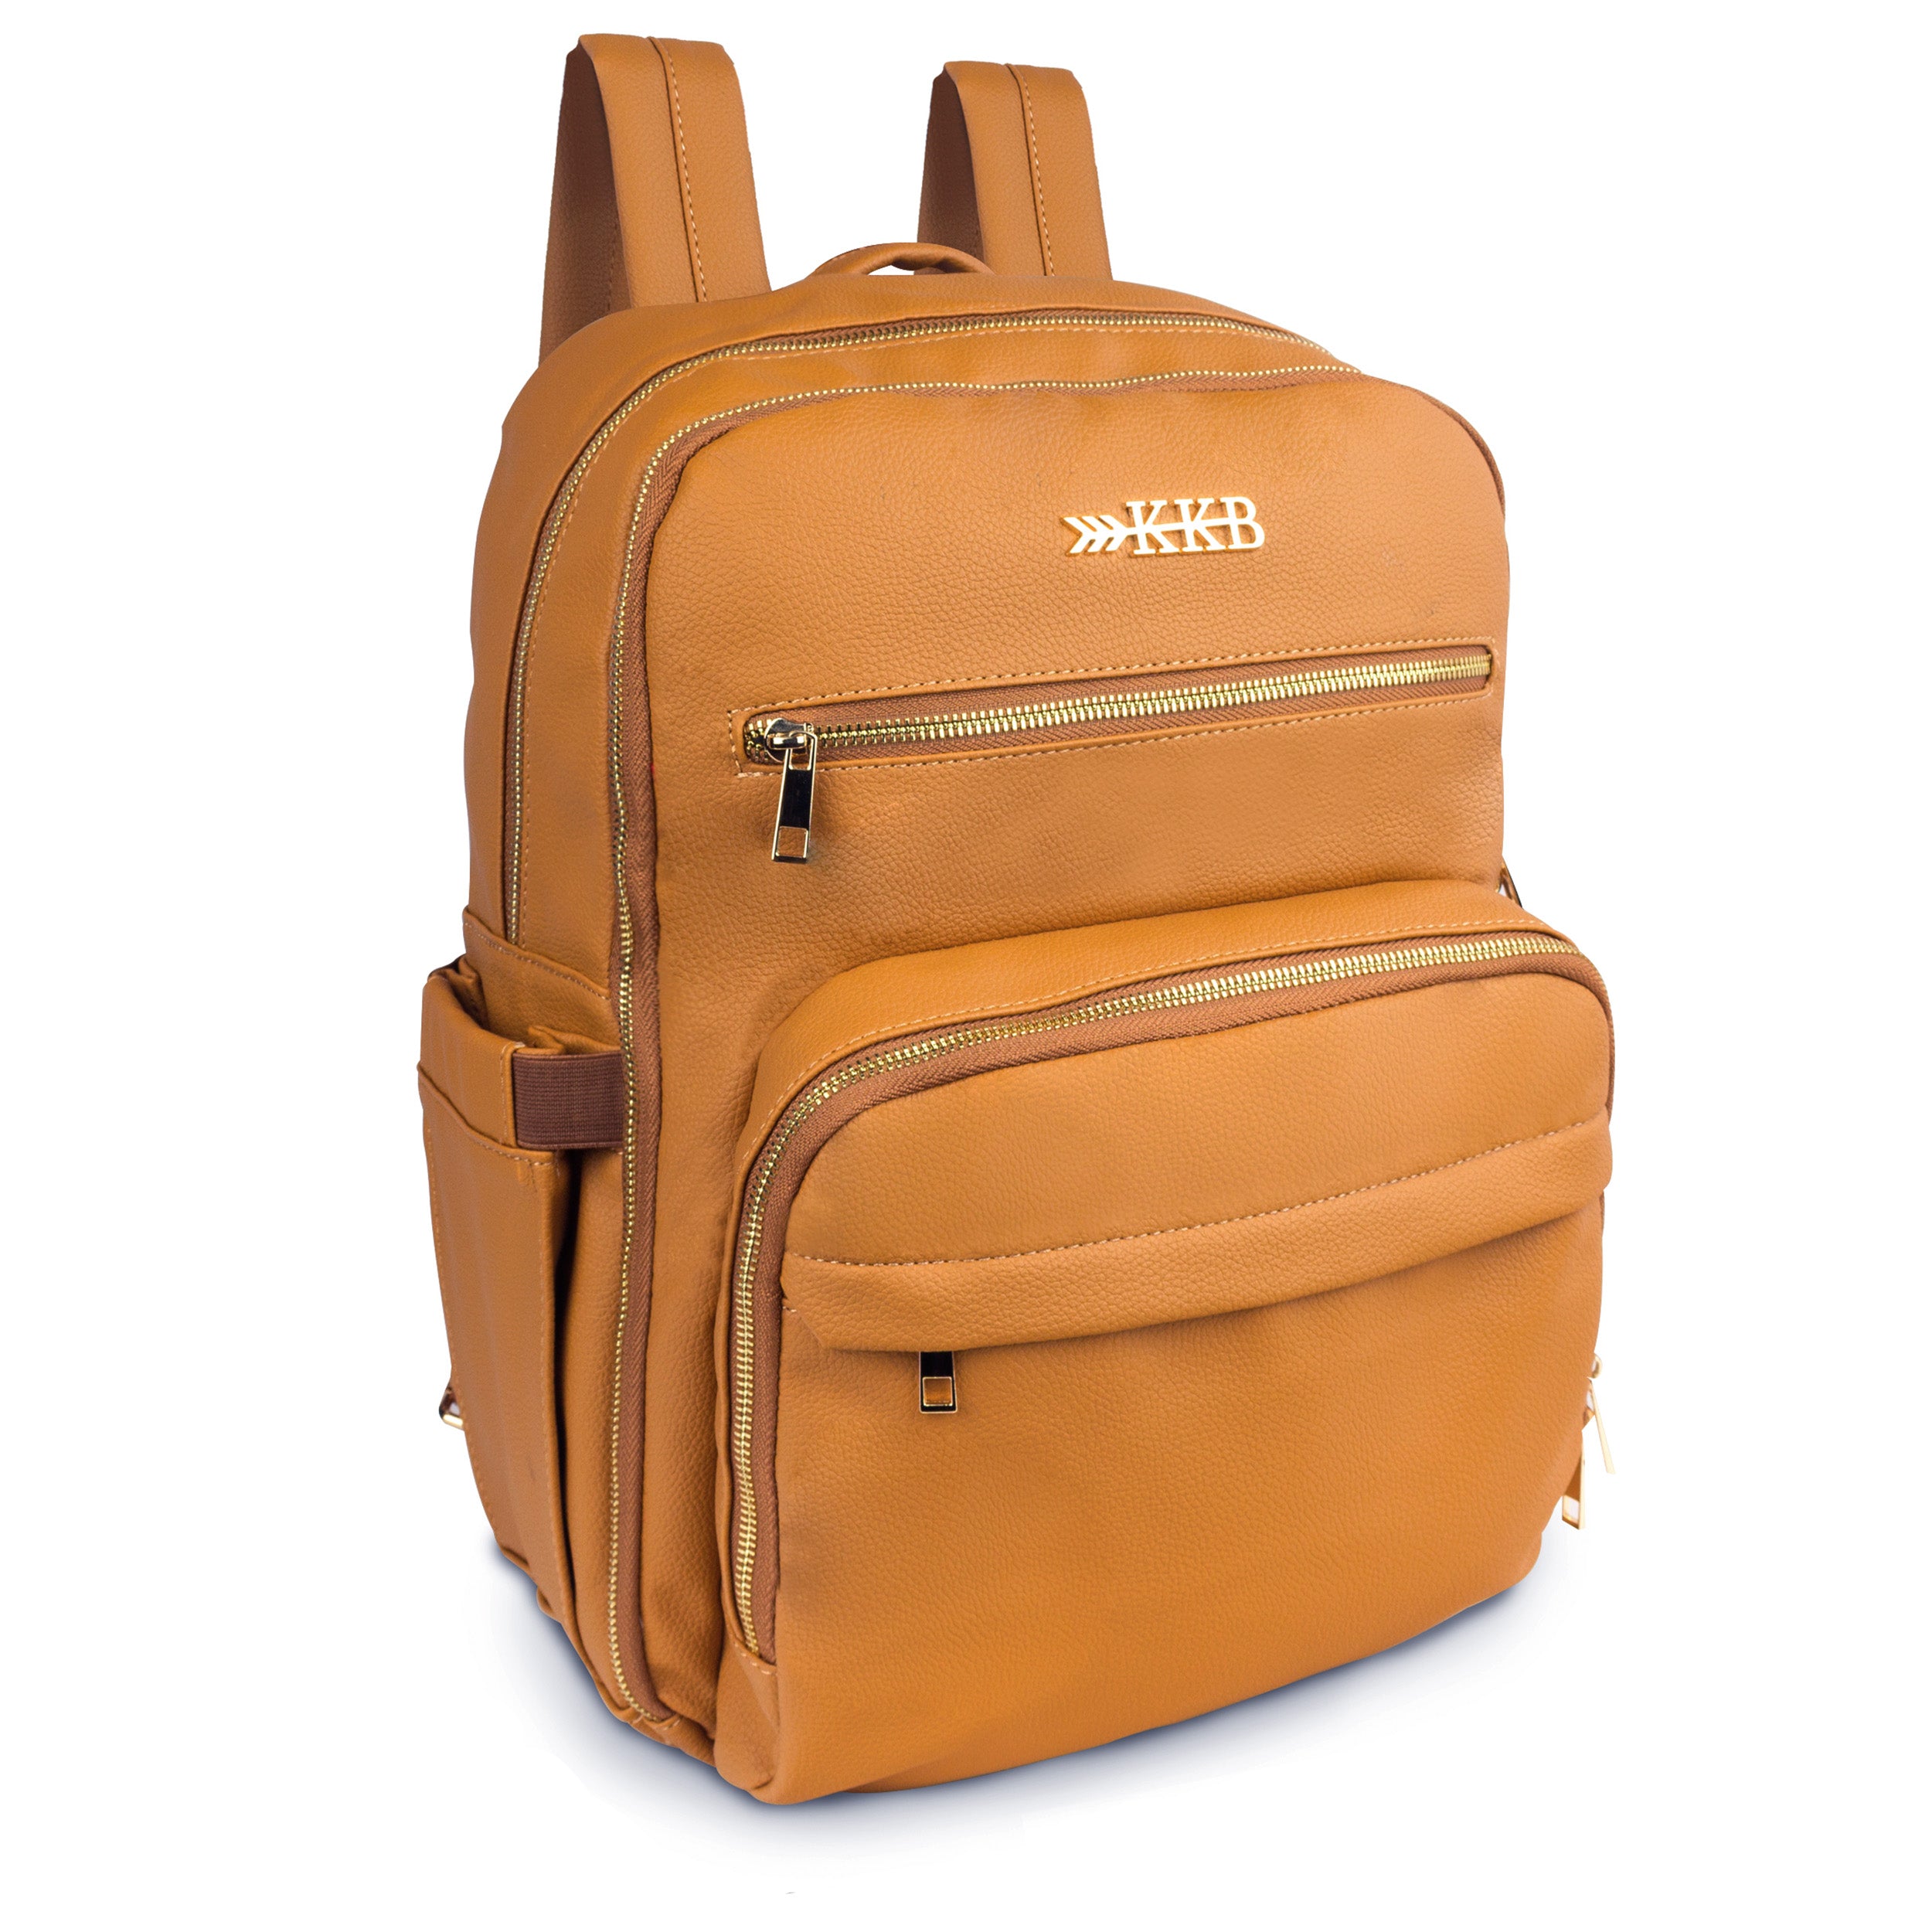 KKB Vegan Leather Diaper Bag Backpack (Camel)